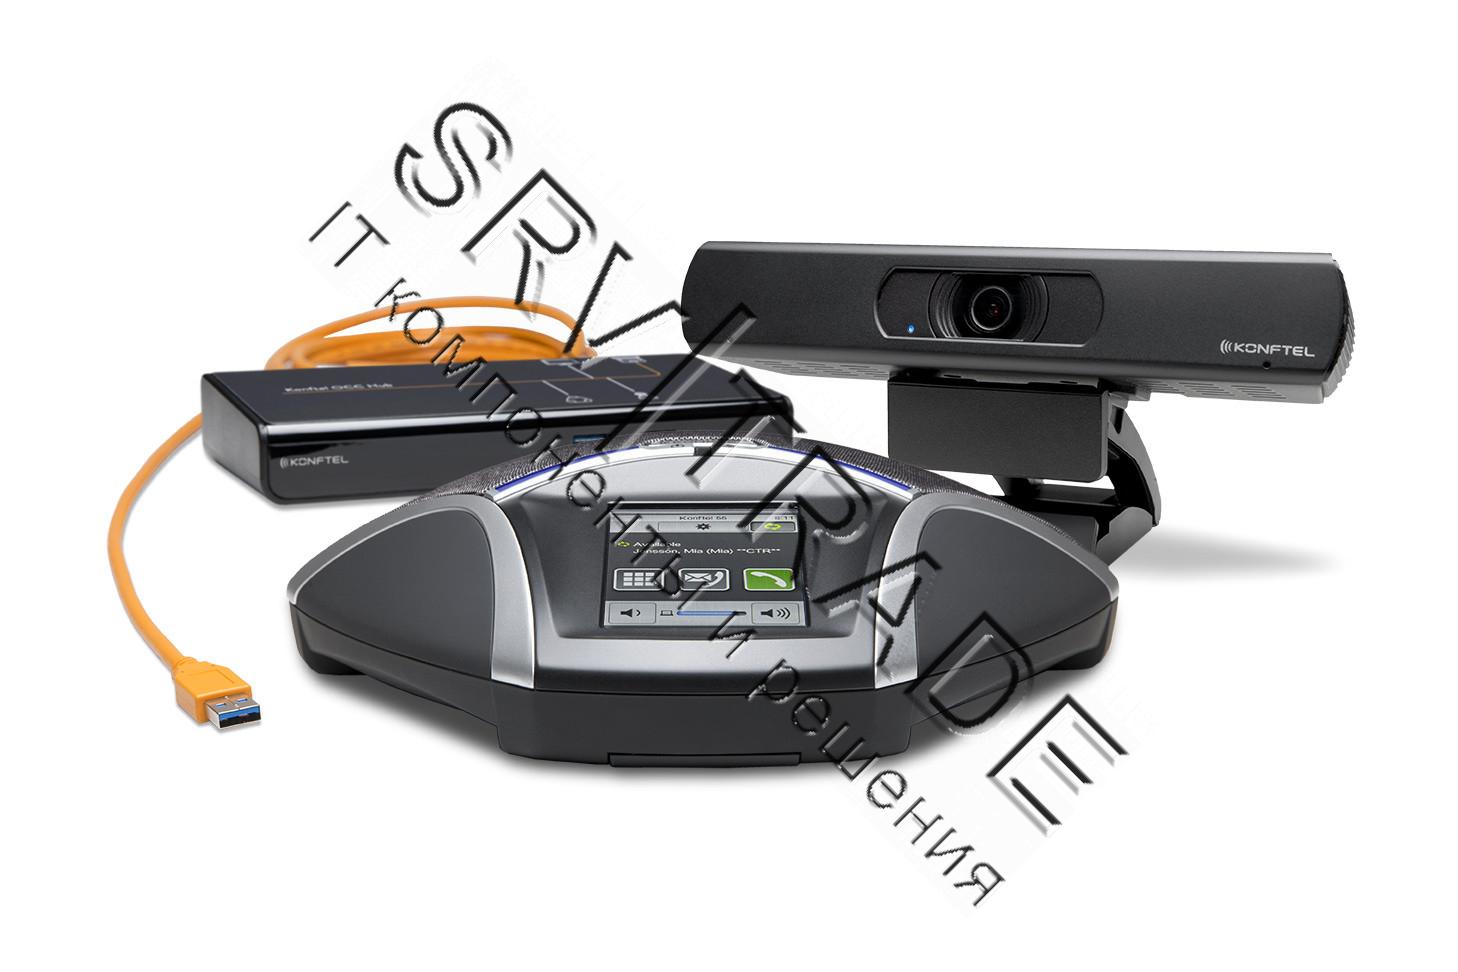 Комплект для видеоконференцсвязи Konftel C20800 (Konftel 800 + Cam20 + HUB)